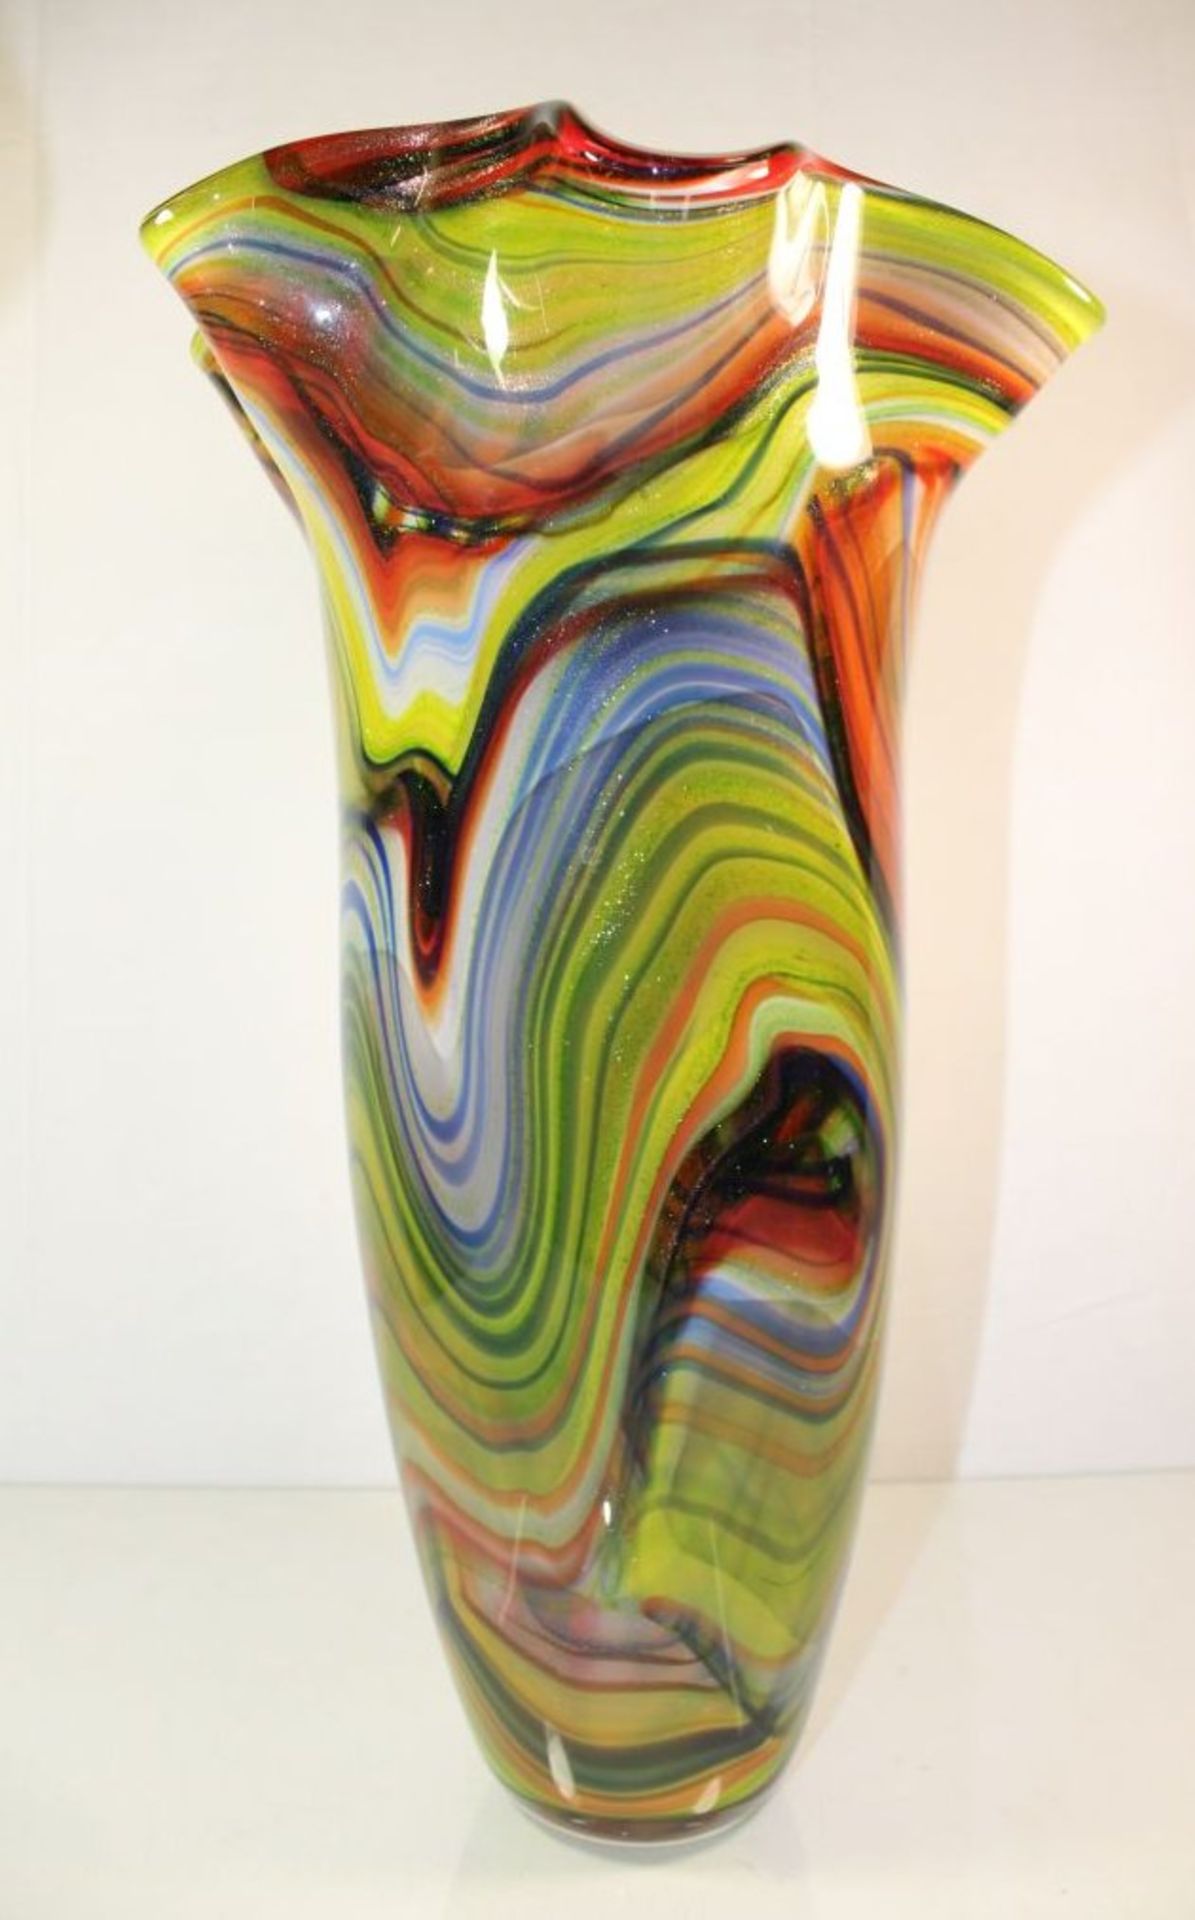 hohe Kunstglas-Vase, farbige Einschmelzungen, H-45cm.- - -22.61 % buyer's premium on the hammer